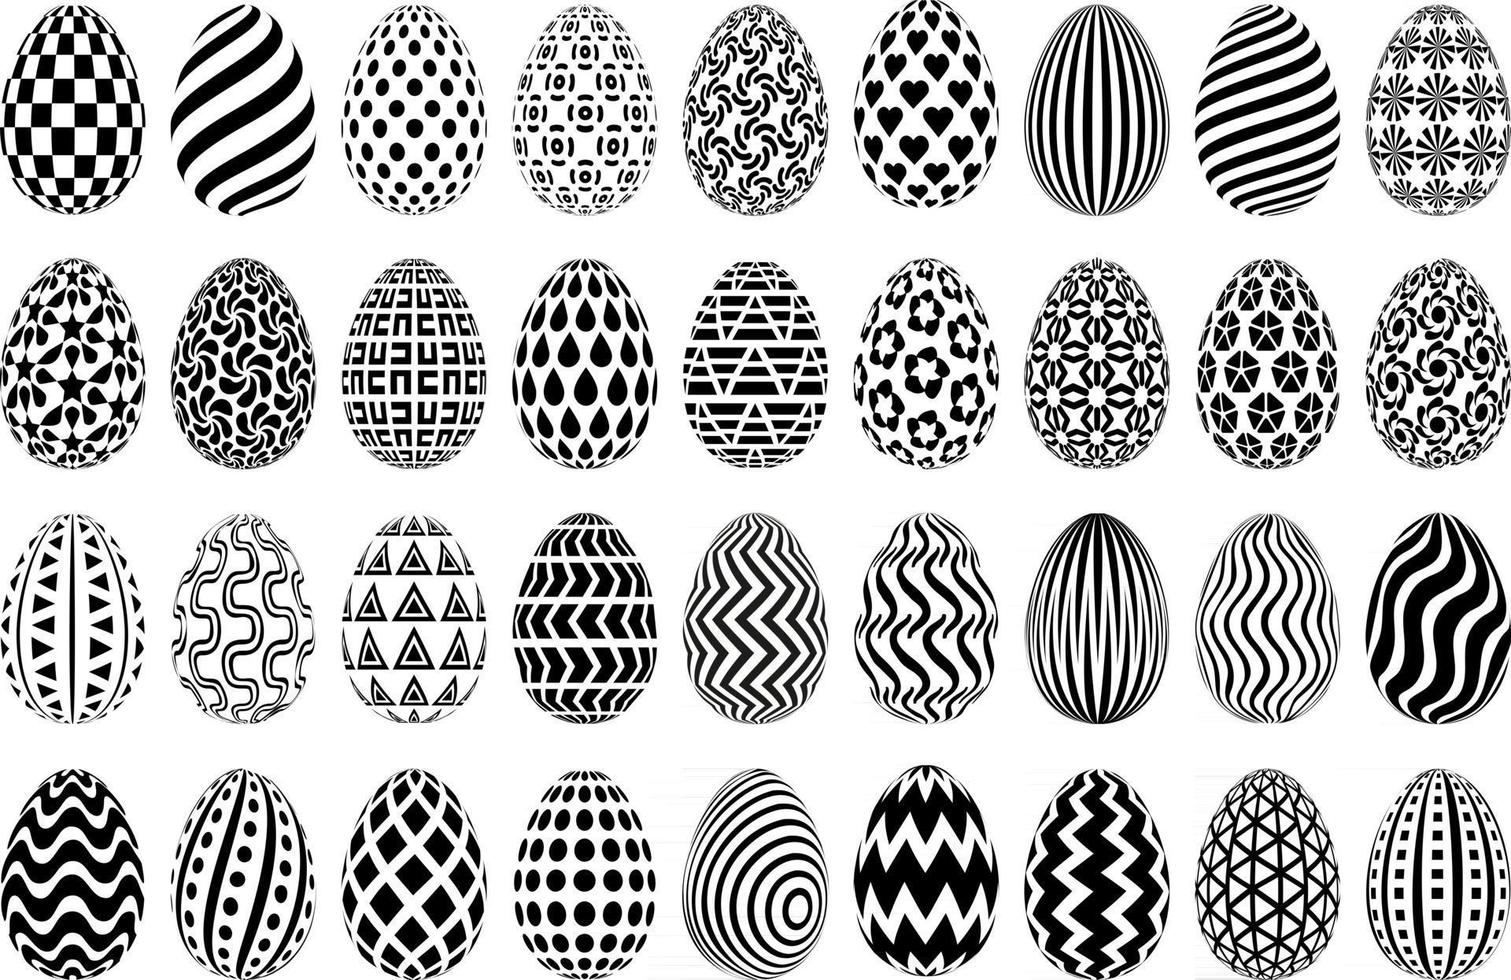 svartvita påskägg illustrationer set. samling av stiliserade påskägg. svartvita mönstrade dekorativa ägg isolerad på vit bakgrund. vektor